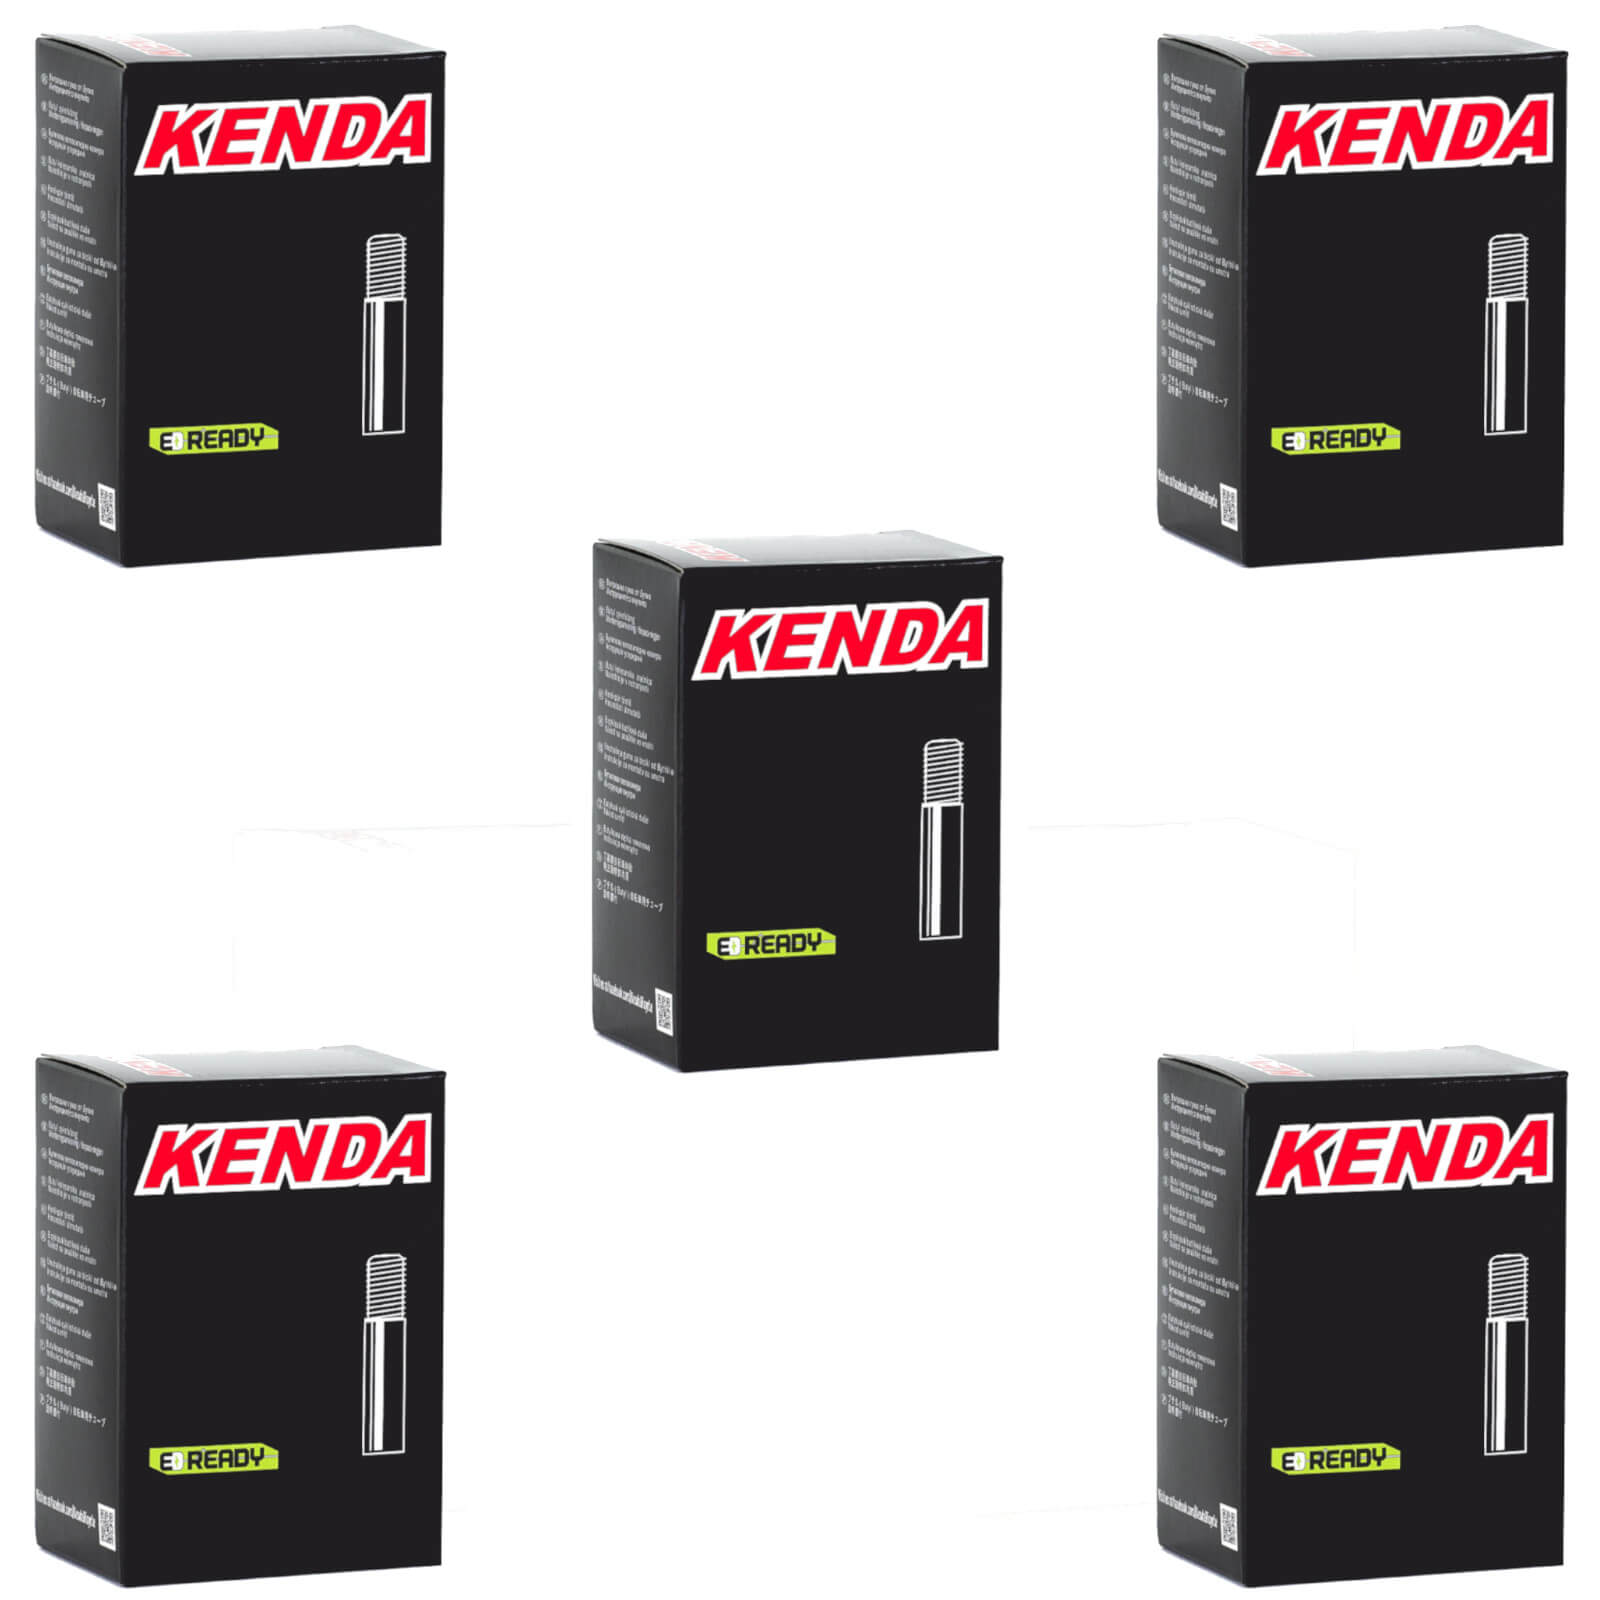 Kenda 26x1.9-2.125" 26 Inch Schrader Valve Bike Inner Tube Pack of 5